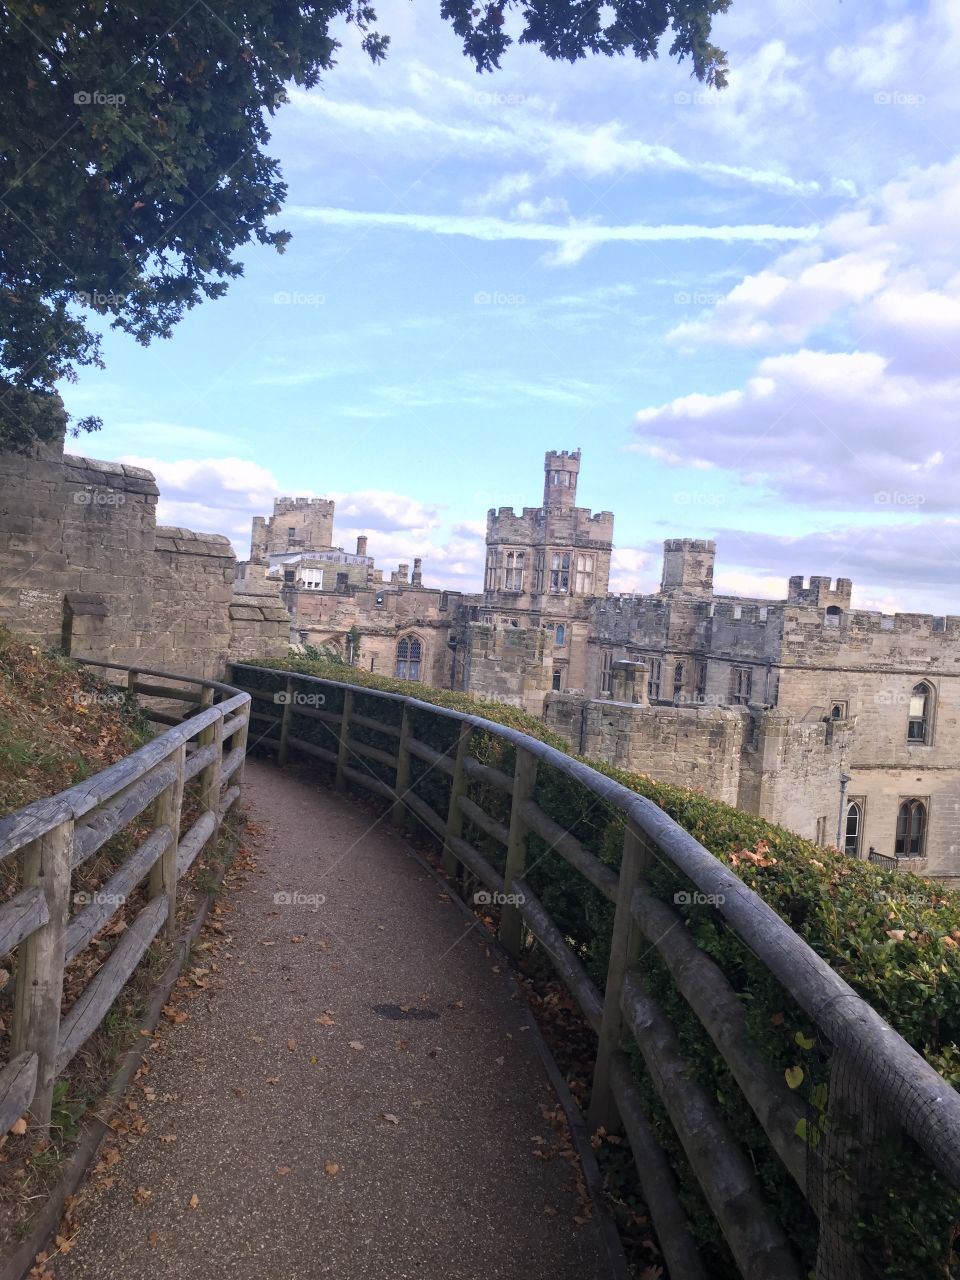 Warwickshire castle walkway October 2015